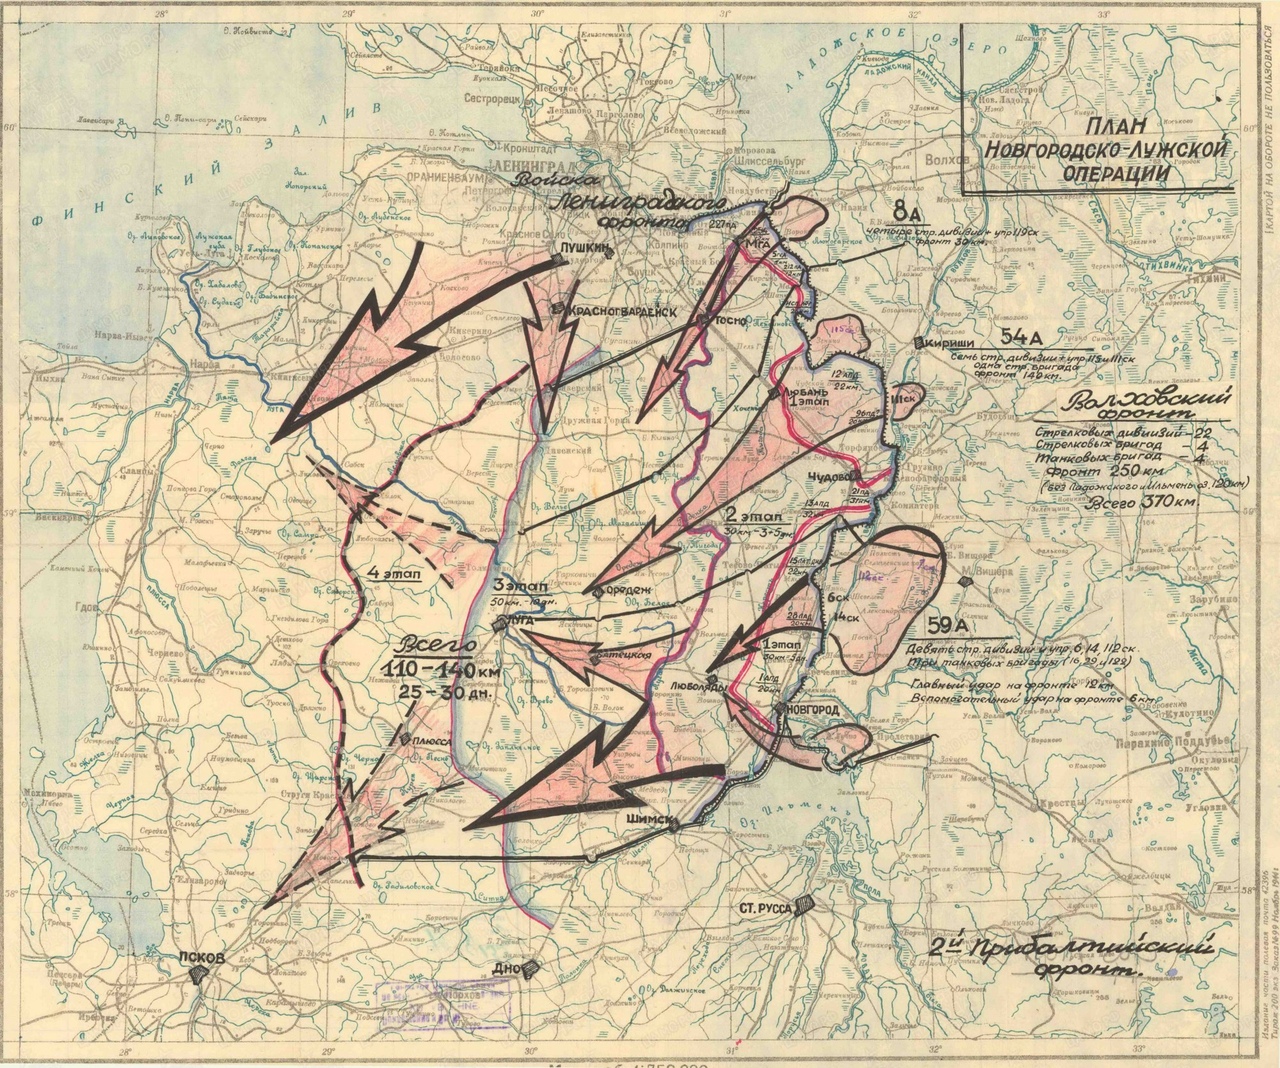 Новгородско-Лужская наступательная операция 1944